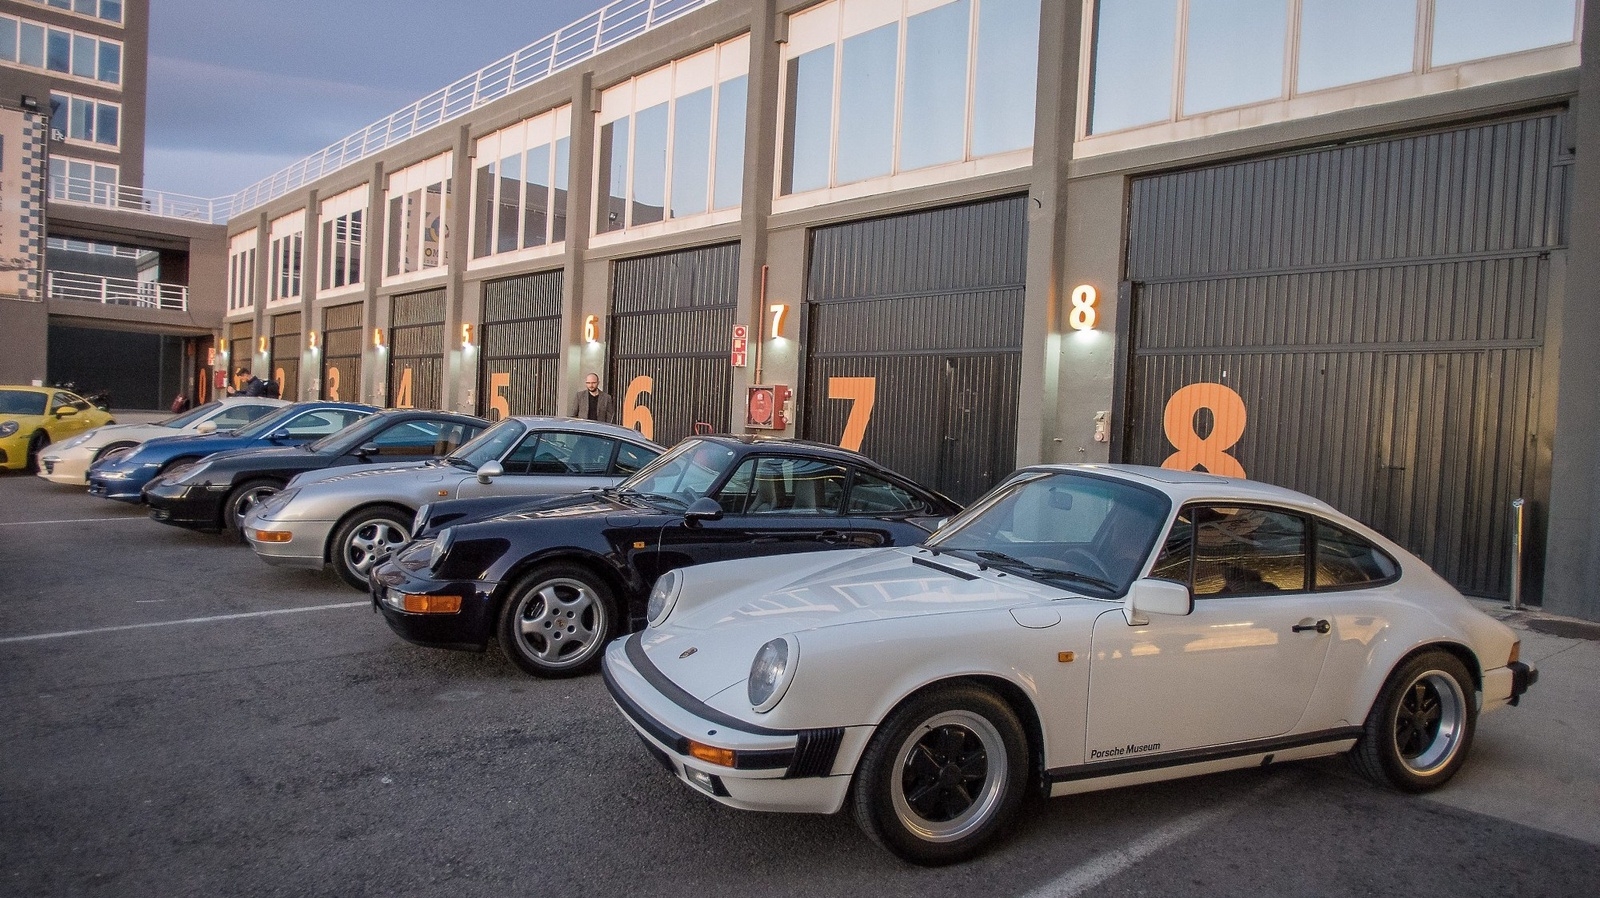 Till provkörningen hade Porschemuseet i Stuttgart bidragit med några 911 av äldre årgångar som journalisterna fick se, inte provköra. Den vita i förgrunden är en 911 Carrera från 1980-talet med 3,2-liters boxermotor på 231 hästkrafter.